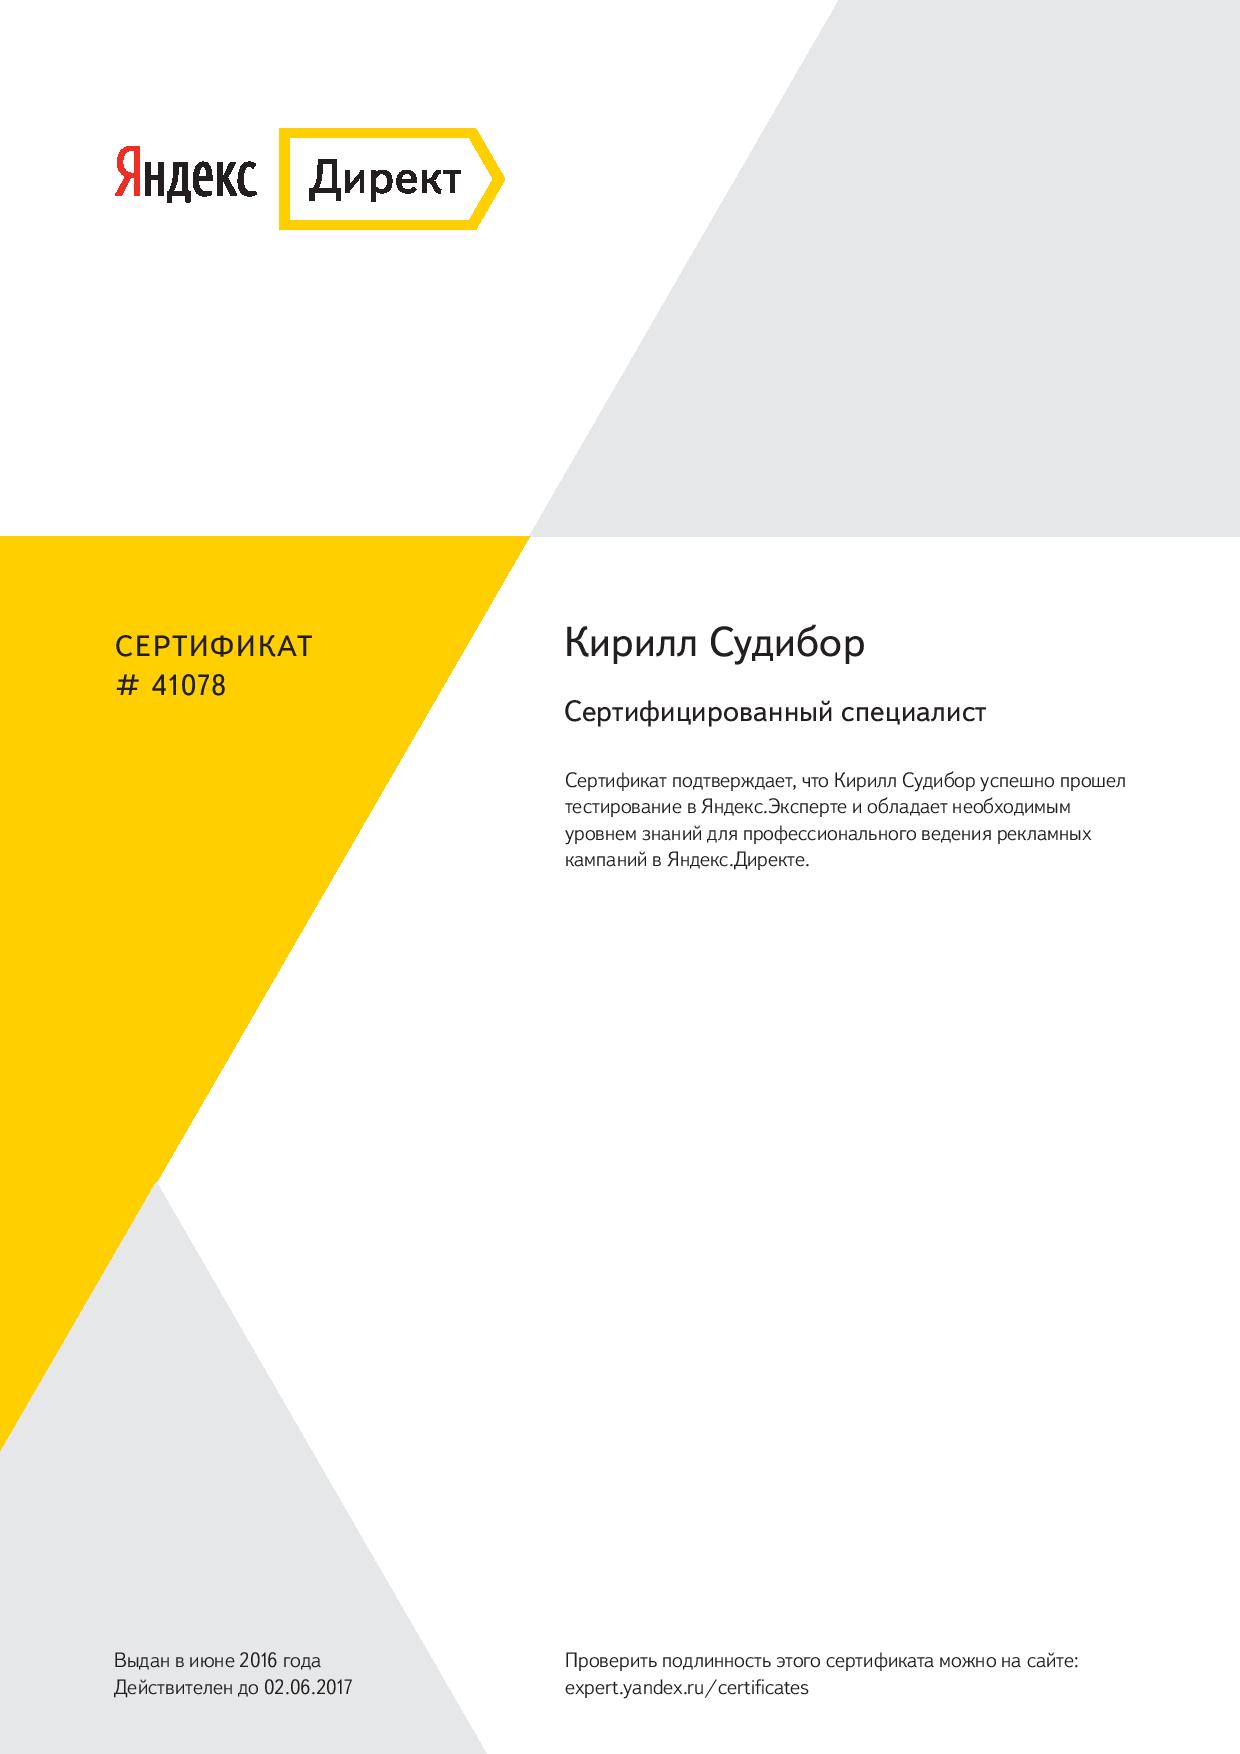 Сертифицированный специалист Яндекс.Директа 2016г.